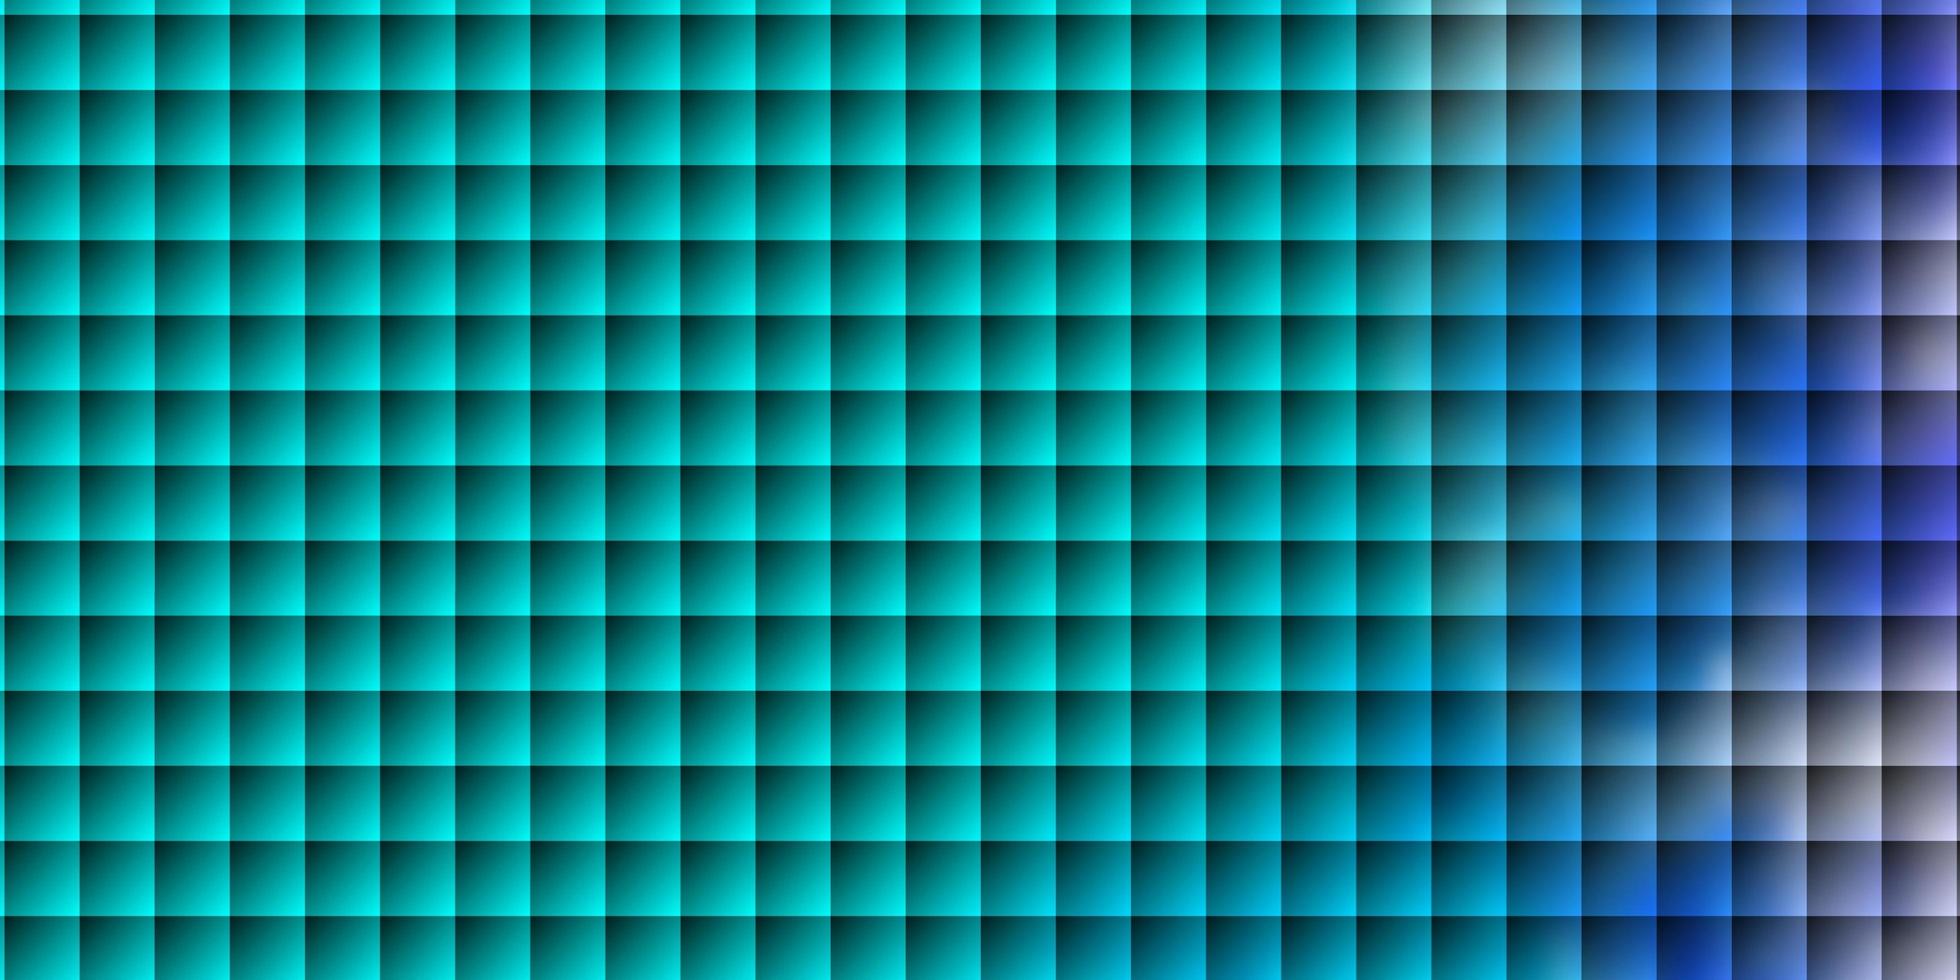 patrón de vector rosa claro, azul en estilo cuadrado.